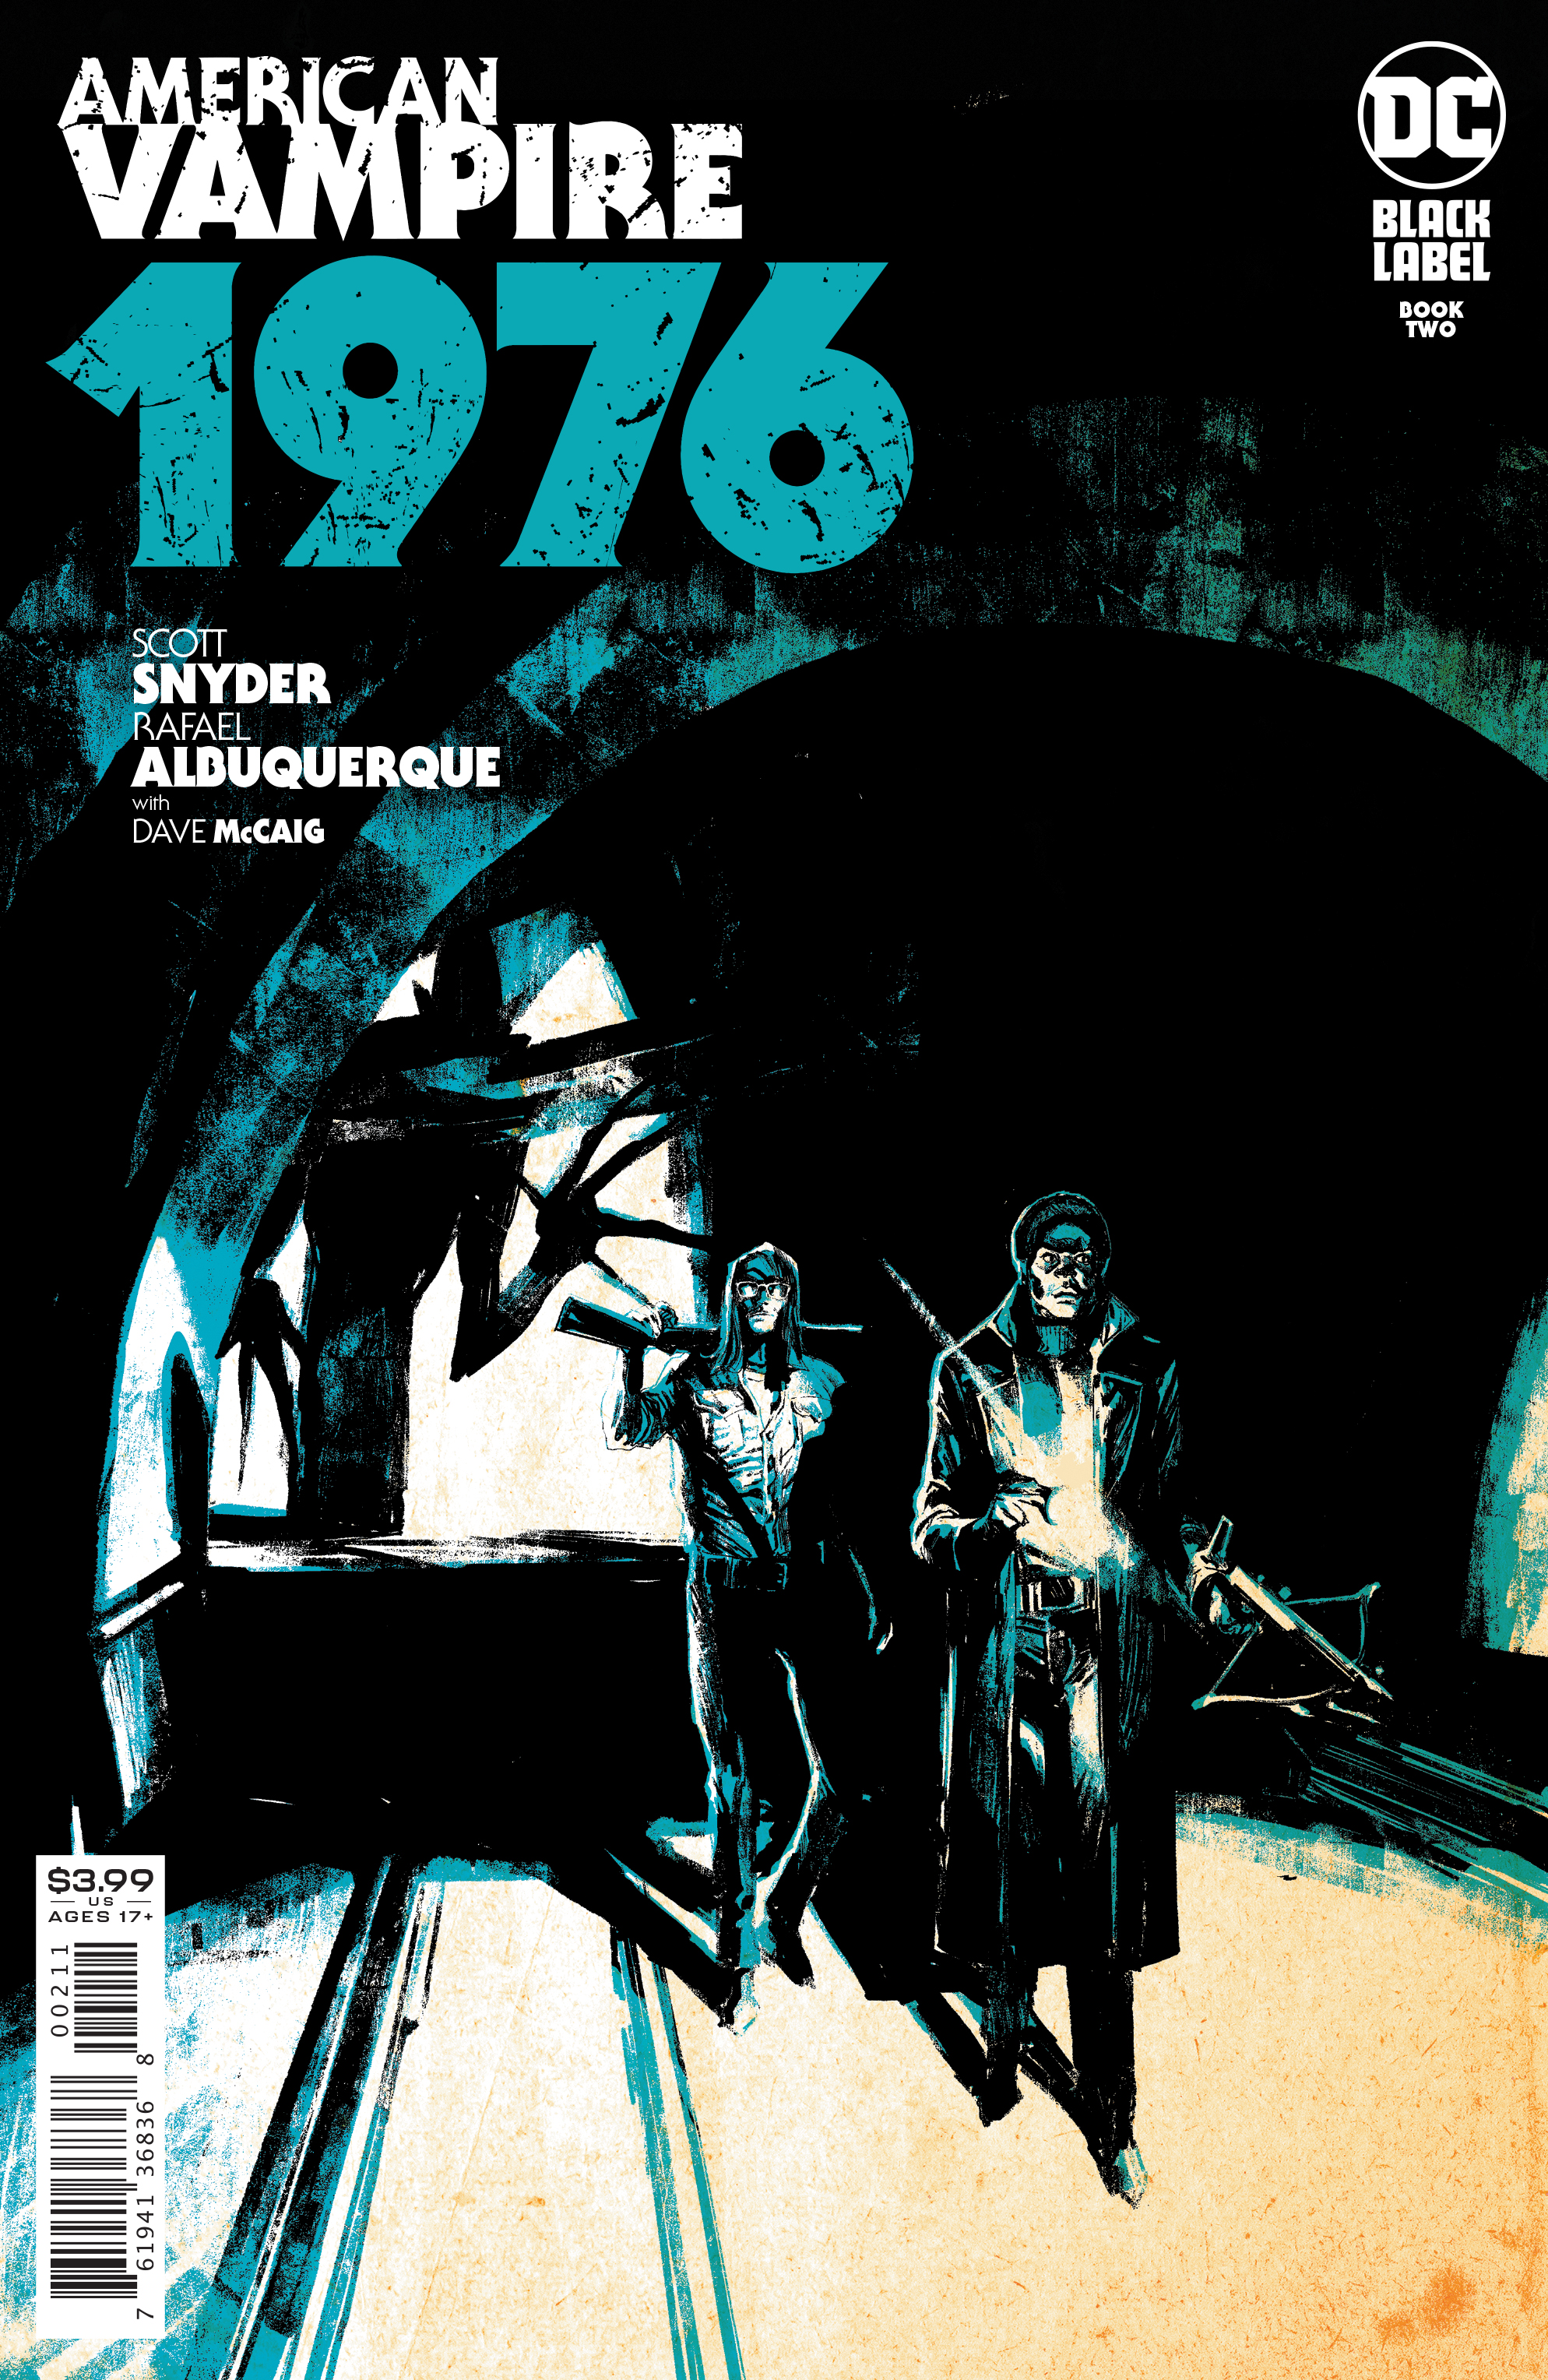 American Vampire 1976 #2 Cover A Rafael Albuquerque (Mature) (Of 9)